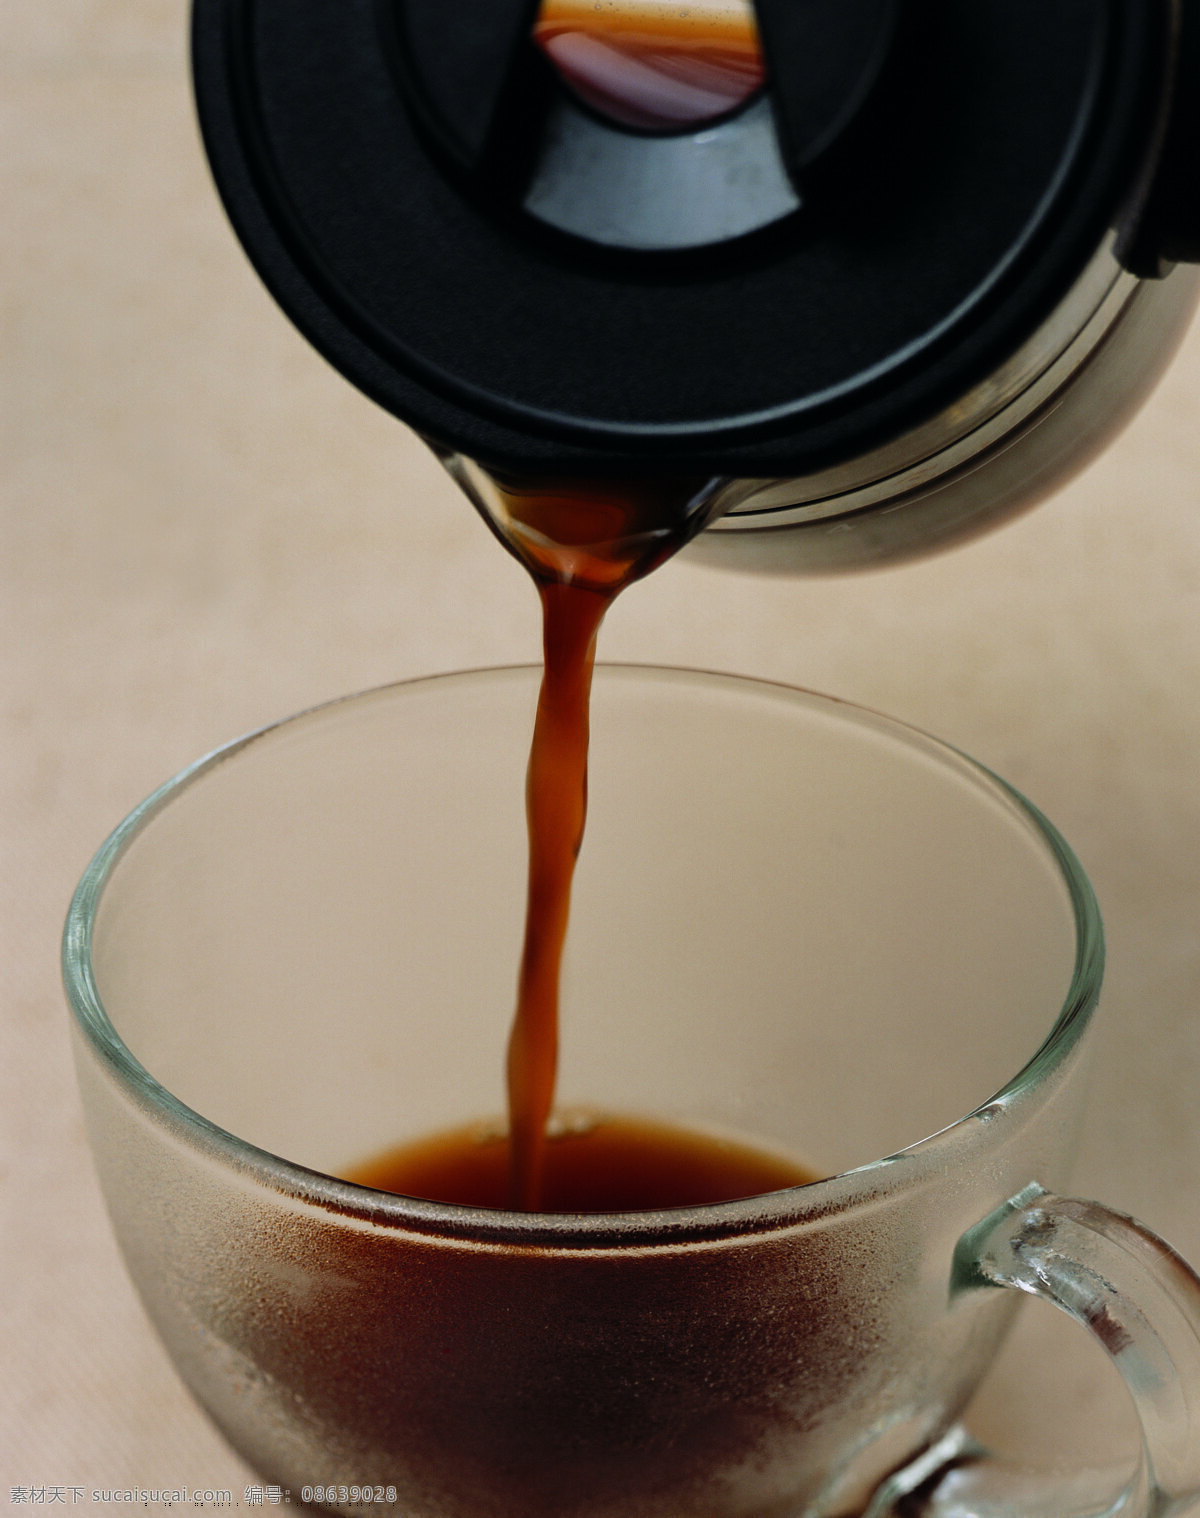 倒 咖啡 coffee 玻璃杯 瓷器 紫砂 冲咖啡 倒咖啡 杯子 茶具 咖啡文化 优雅 奢华 照片 高清大图 高清图片 咖啡图片 餐饮美食